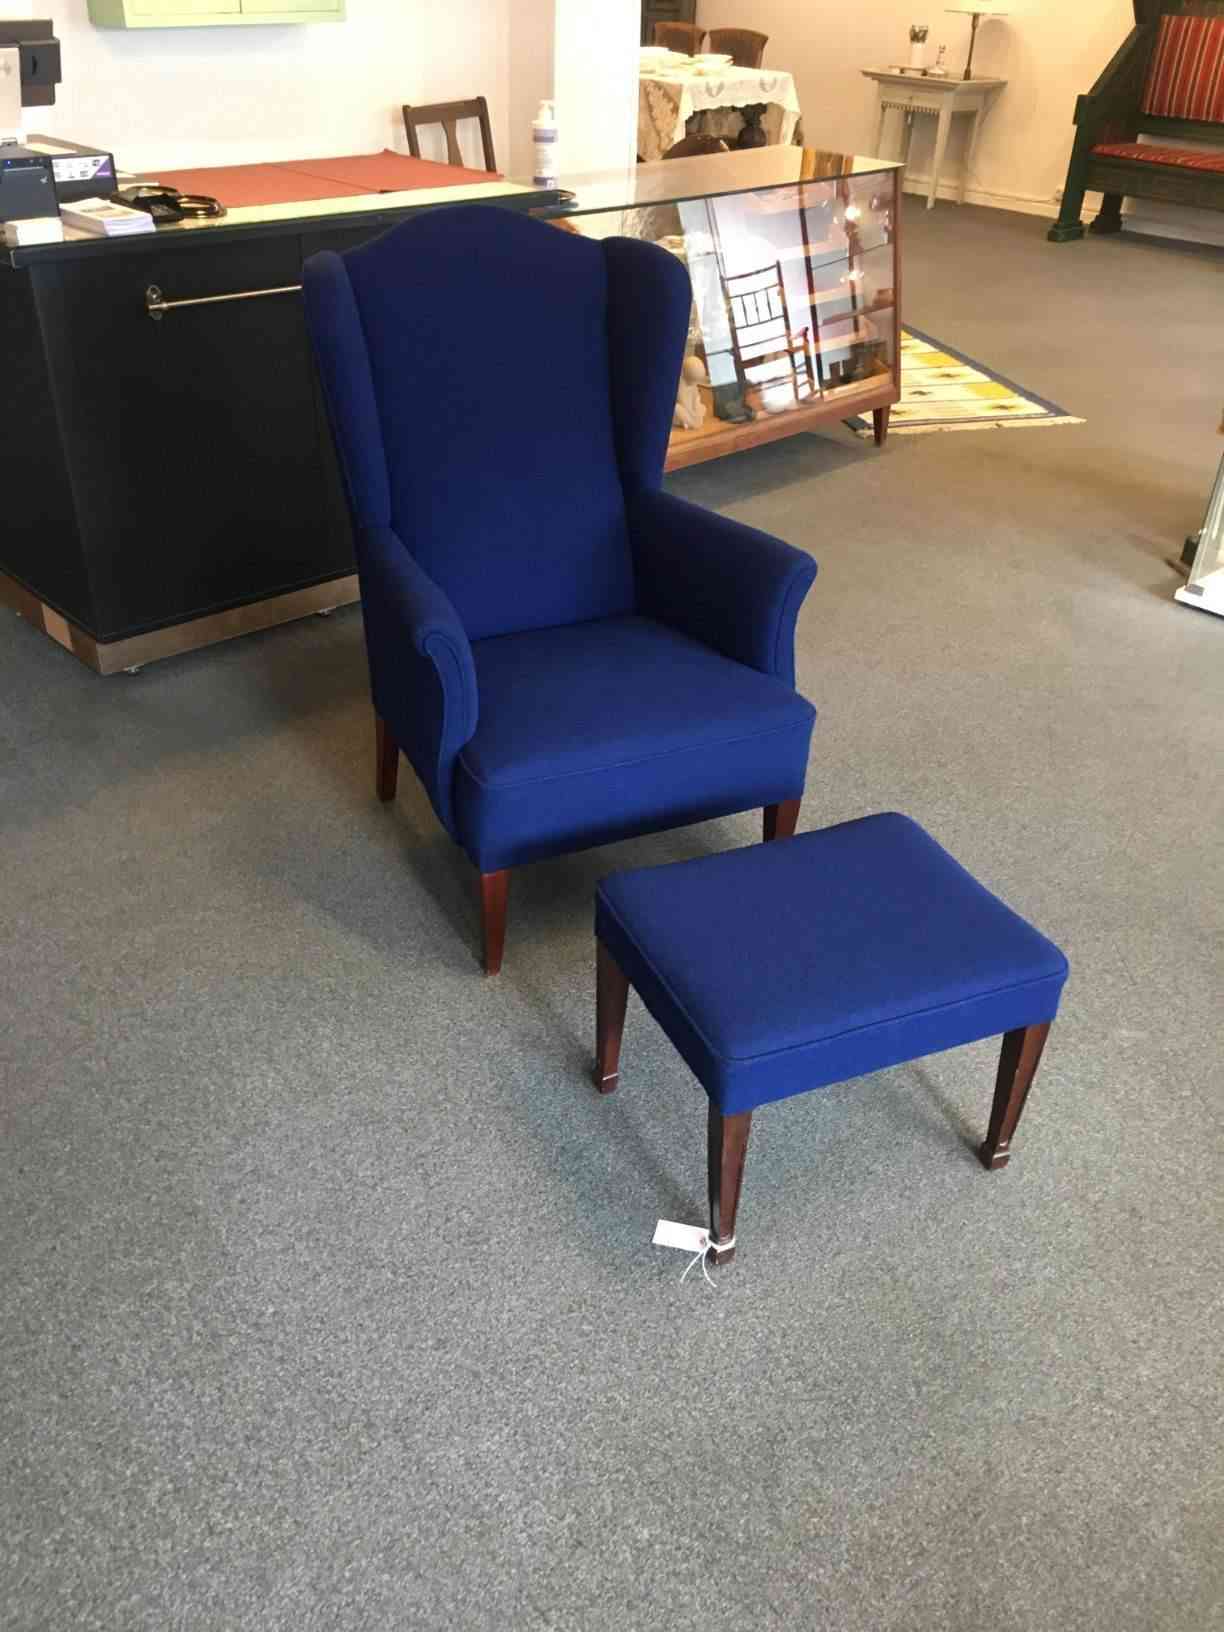 Koboltblå øreklapstol med skammel ompolstret med uld, virkelig god kvalitet og sidekomfort, meget flot stand. Godt håndværk og funtionelt dansk design. Pris: 1.500,- Kr.